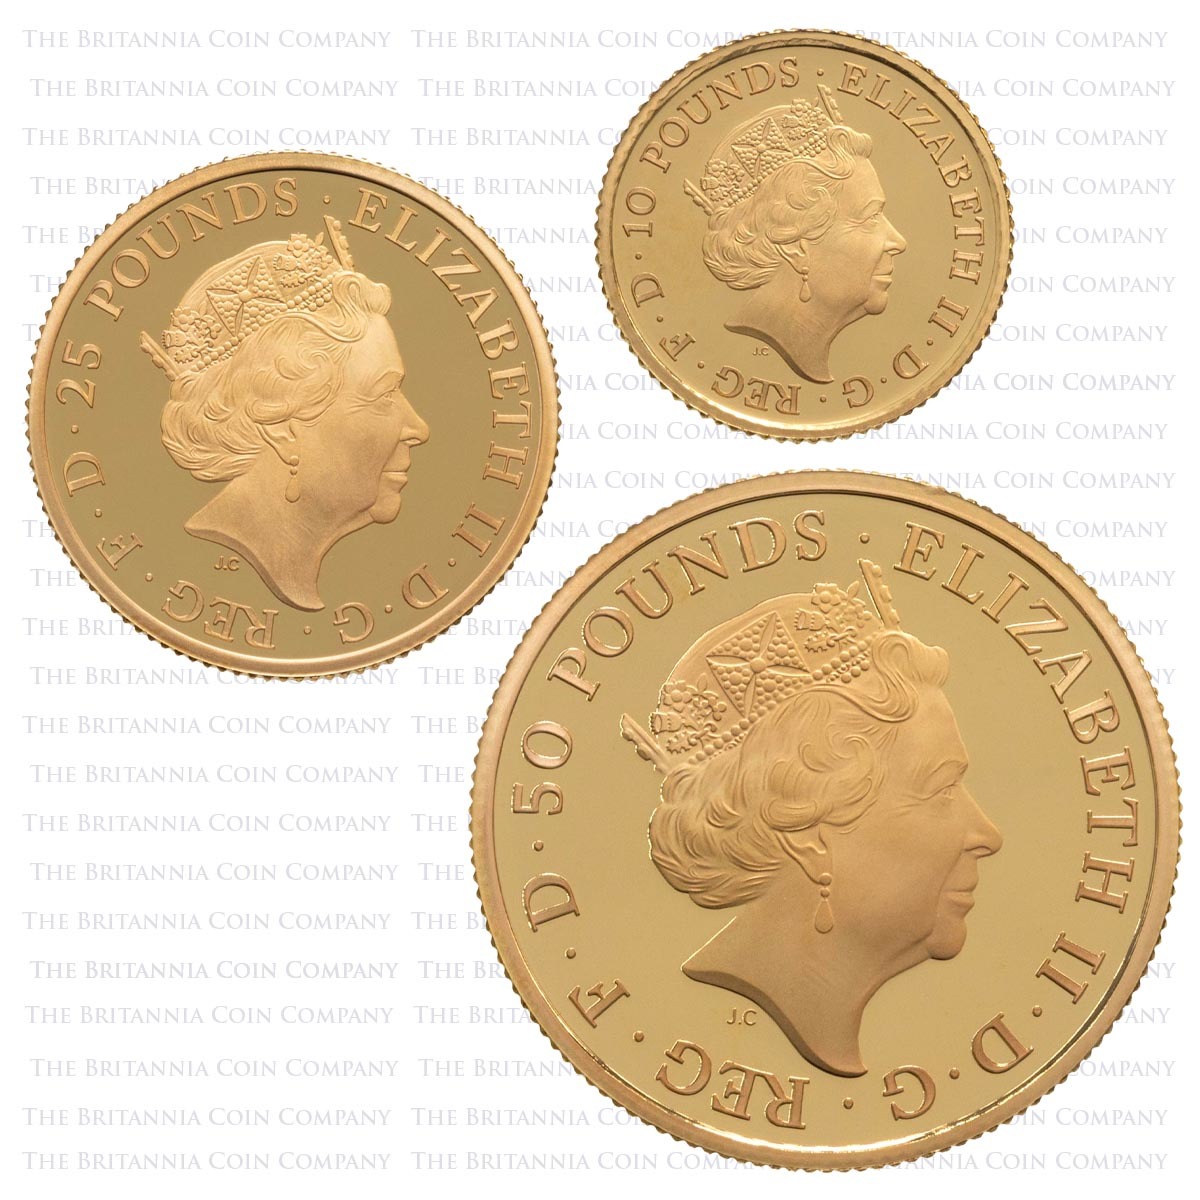 BR21G23 2021 Premium Gold Proof Three Coin Britannia Set Obverses